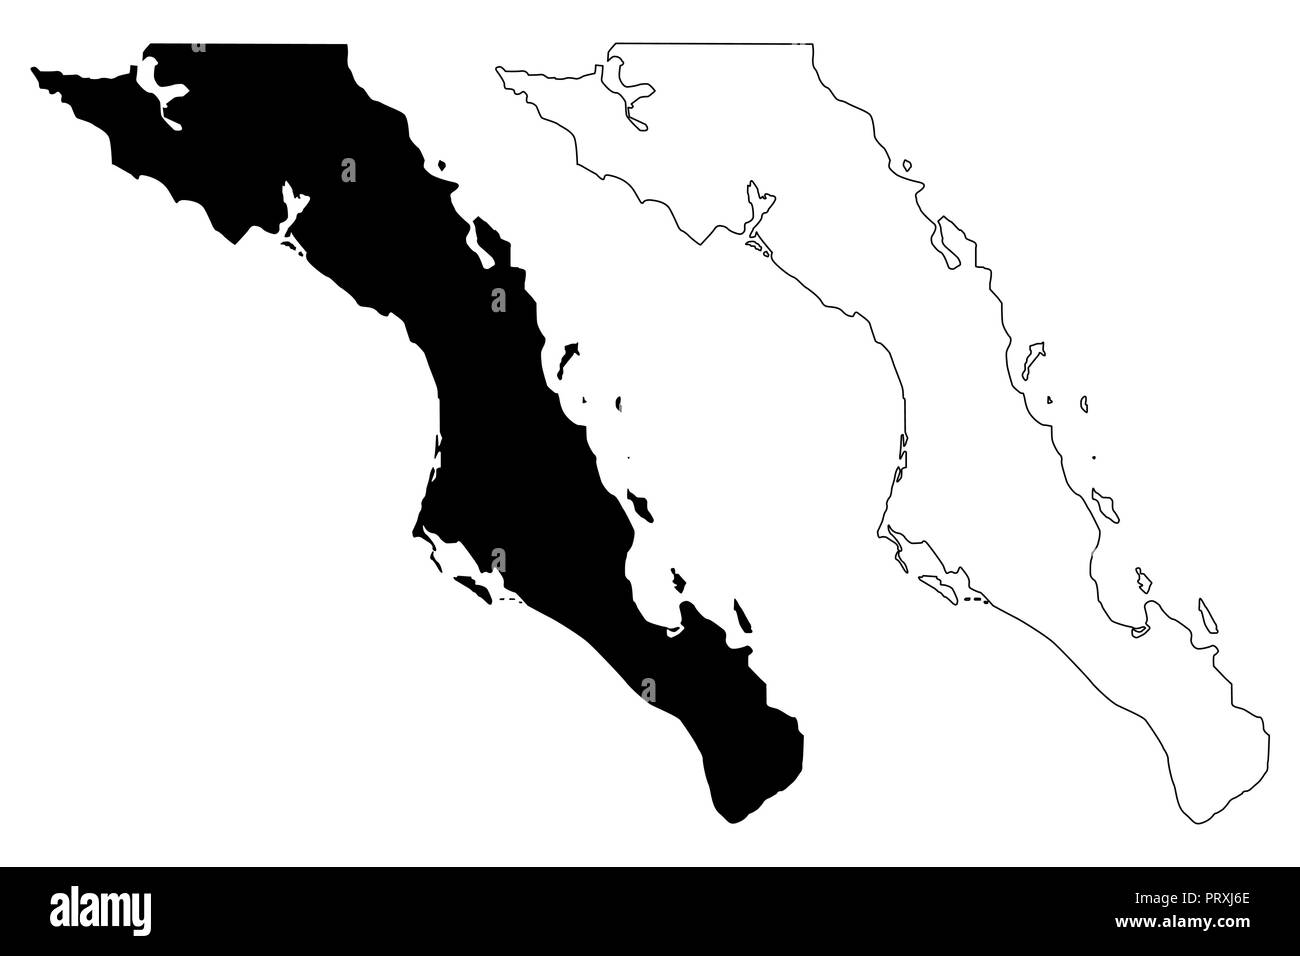 Baja California Sur (United Mexican States, Mexico, federal republic) map vector illustration, scribble sketch Estado Libre y Soberano de Baja Califor Stock Vector